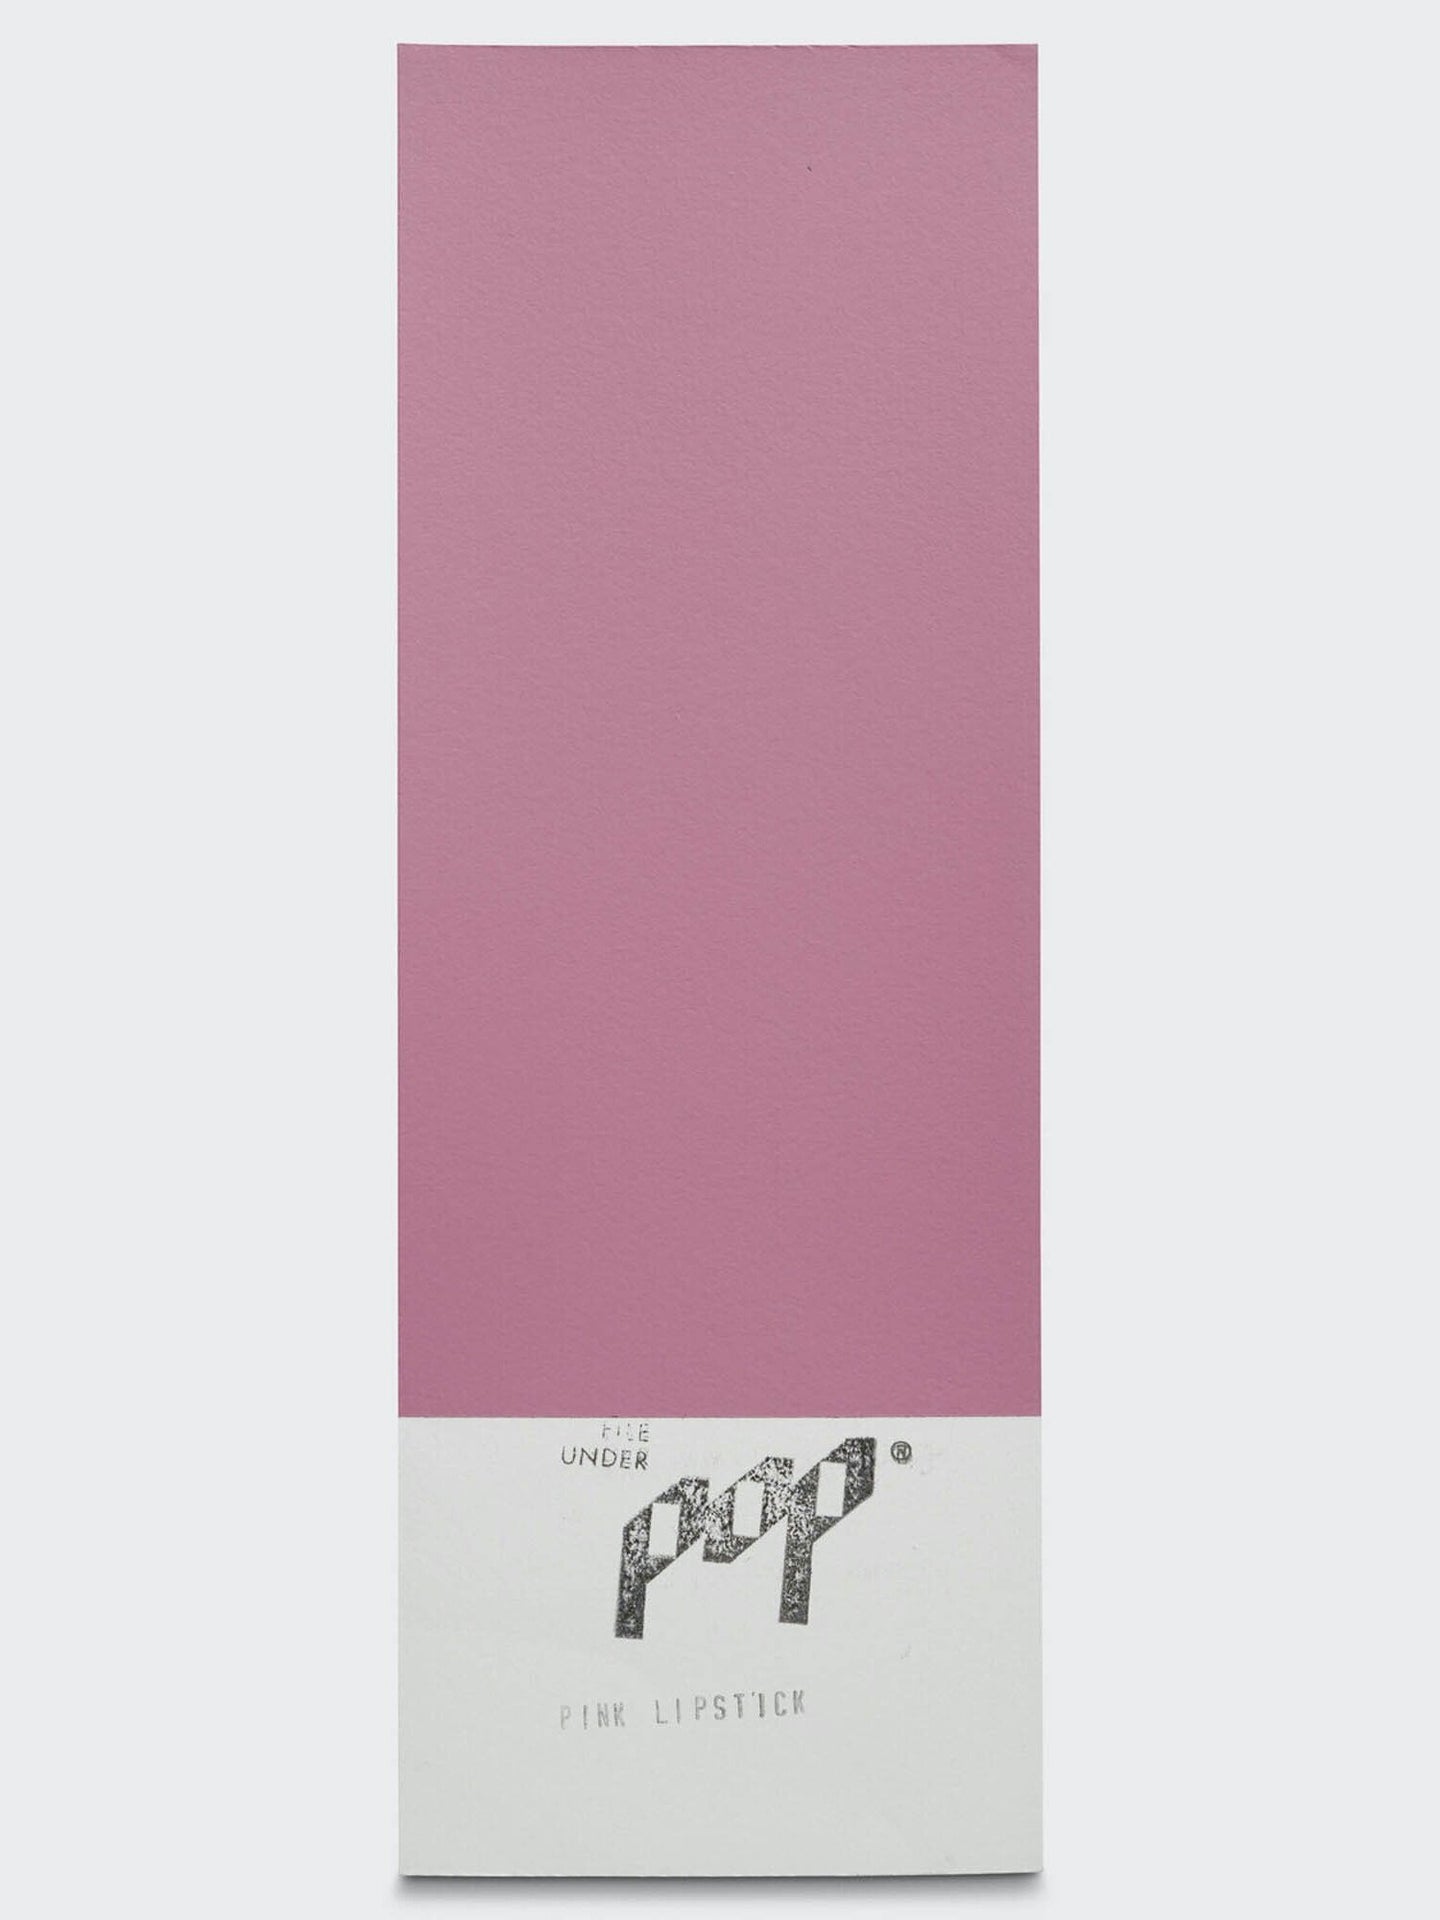 File Under Pop / Pink Lipstick